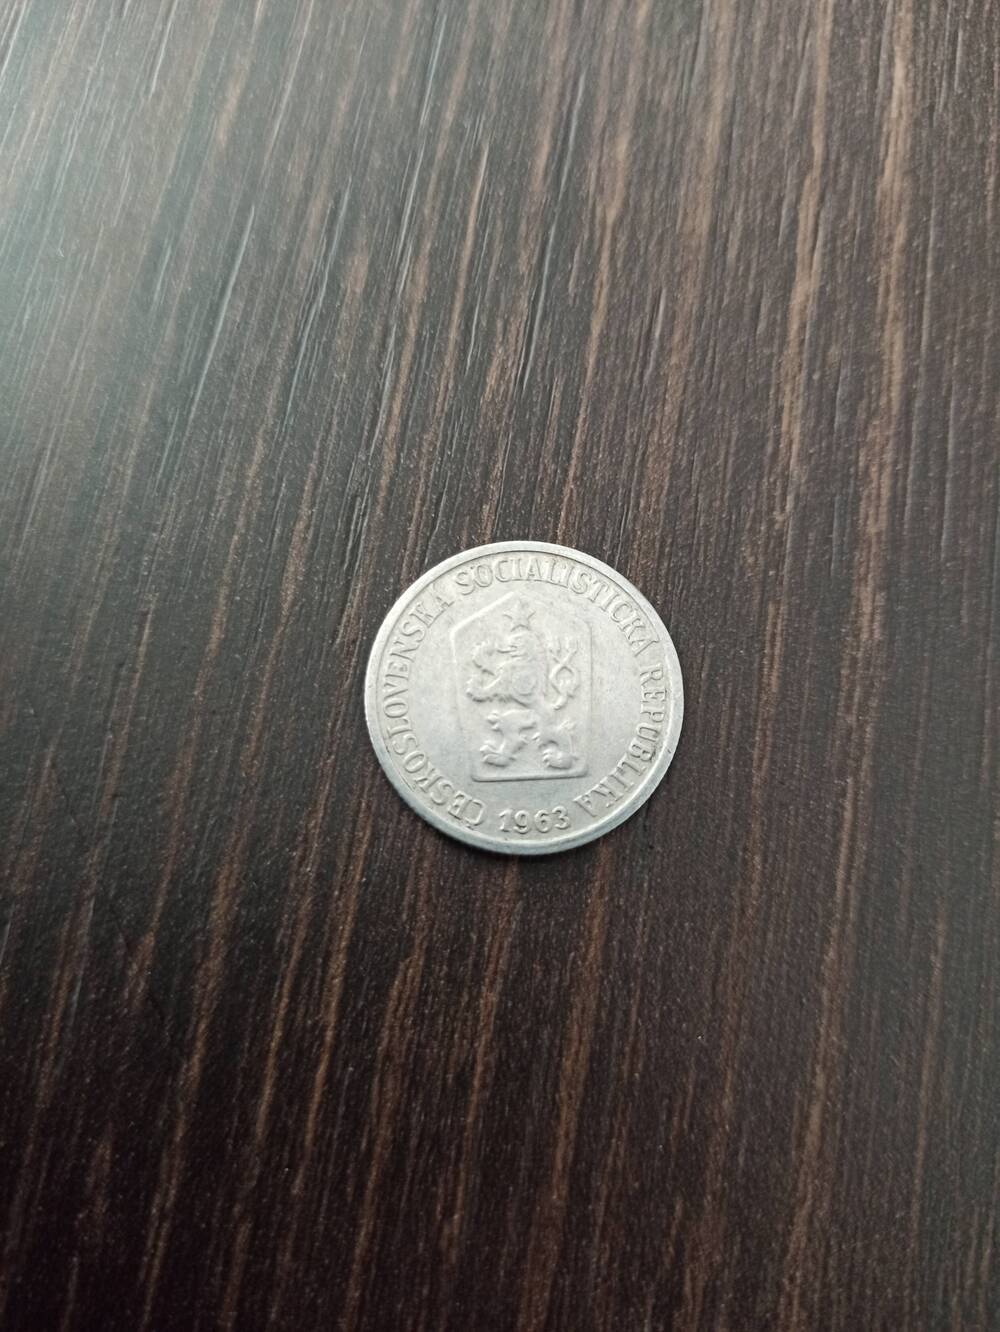 Нумизматика. Монета  Чехии достоинством 10 h 1963 года. Лицевая сторона «10» по кругу венок из листьев, гербовая сторона – герб.